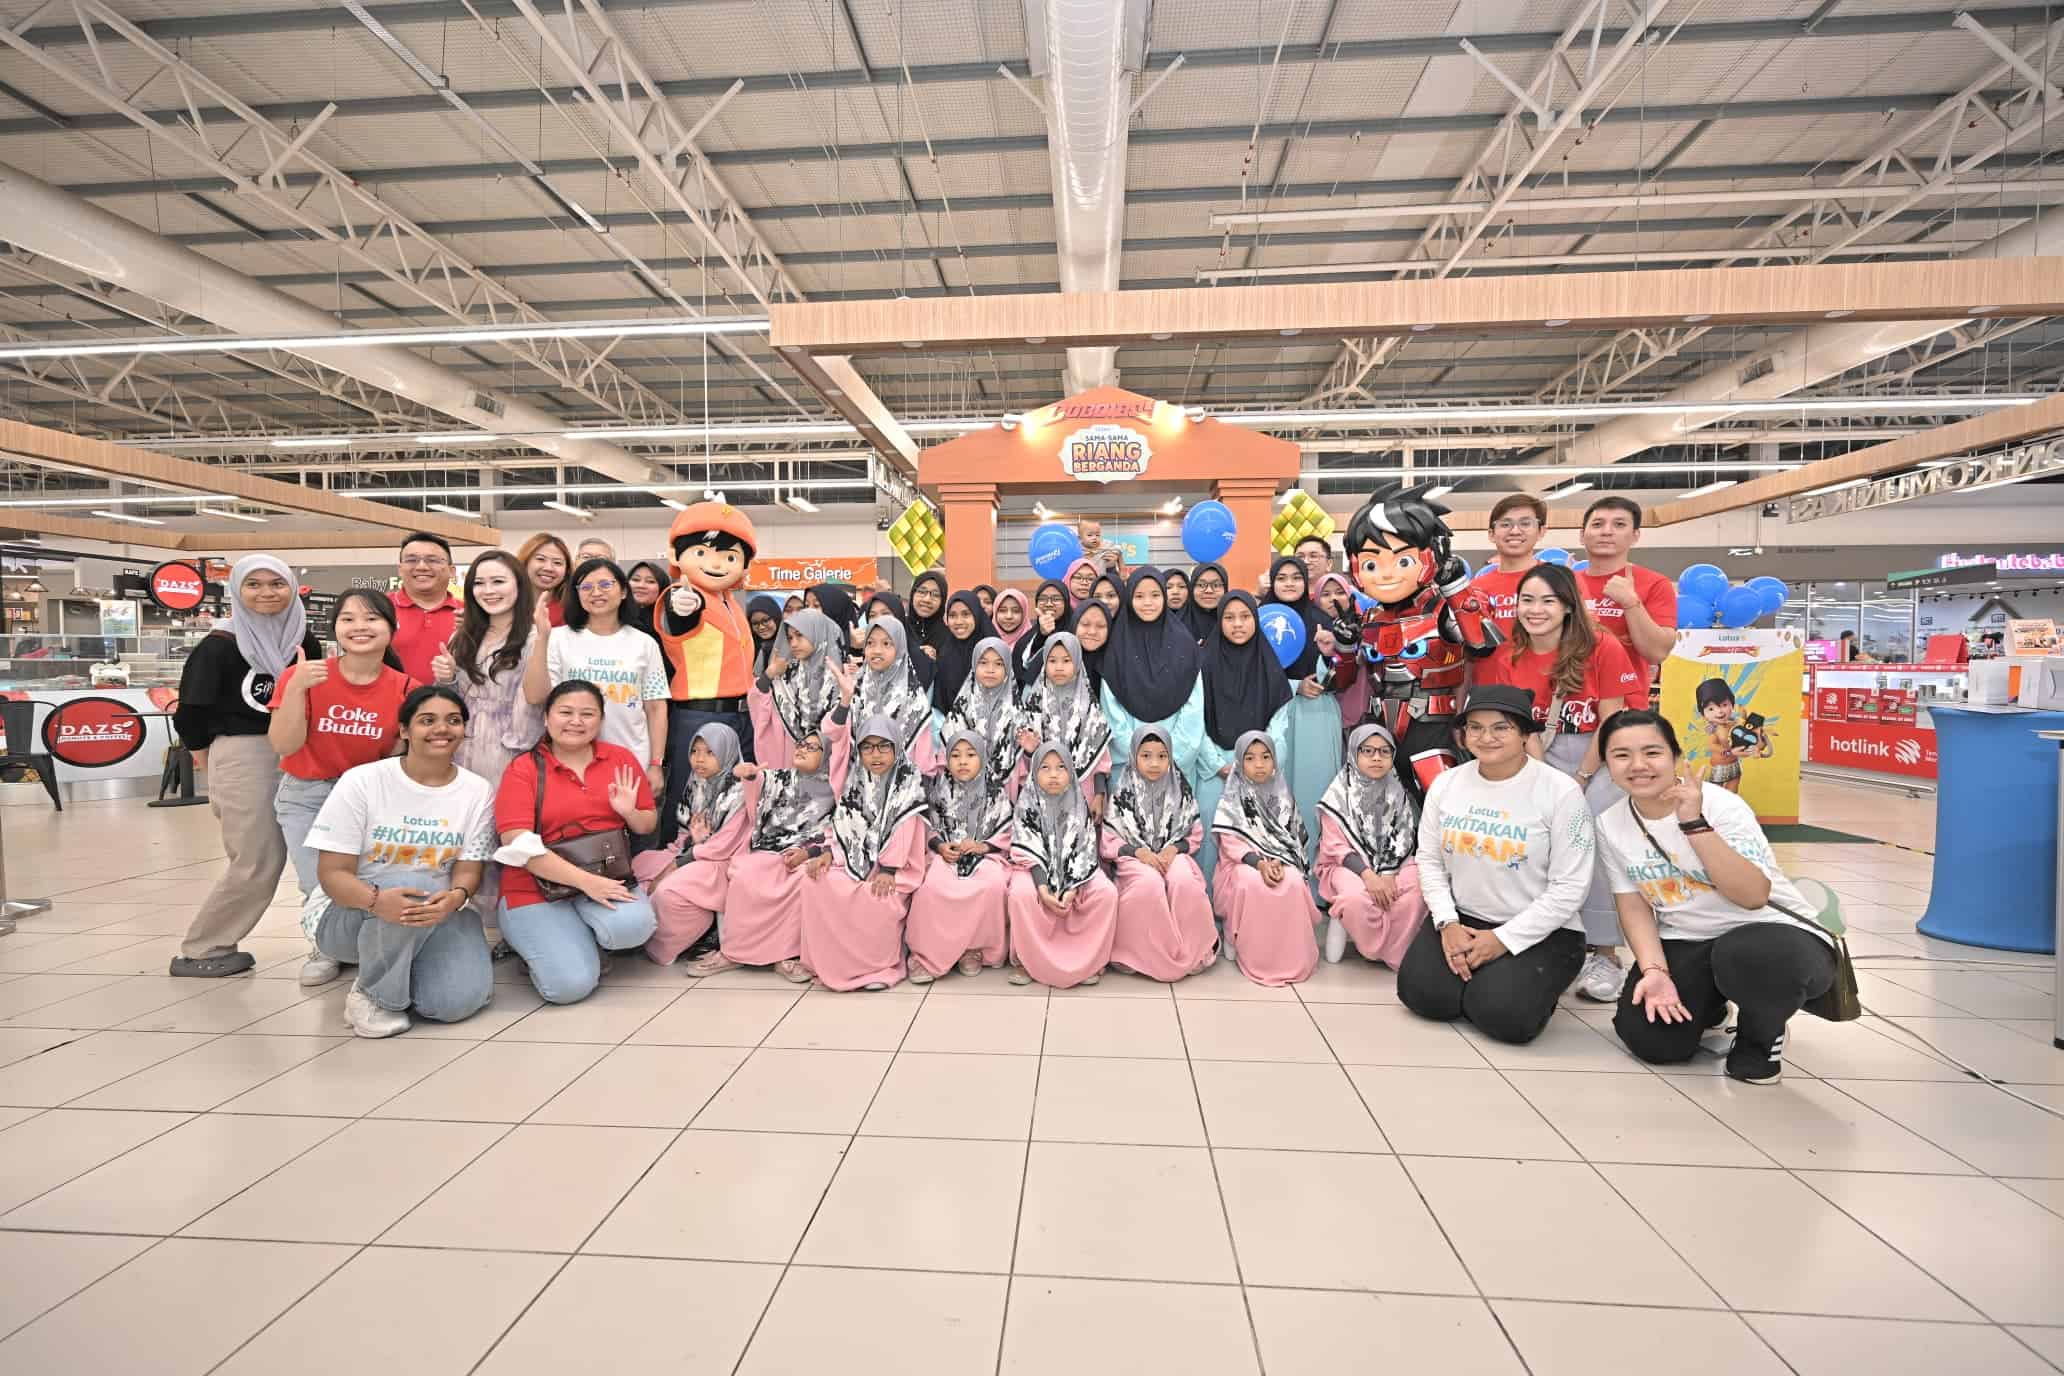 Lotus’s Malaysia Kongsi Keberkatan Ramadan dengan Kerja Amal, Sokongan Komuniti dan Usaha Sukarela